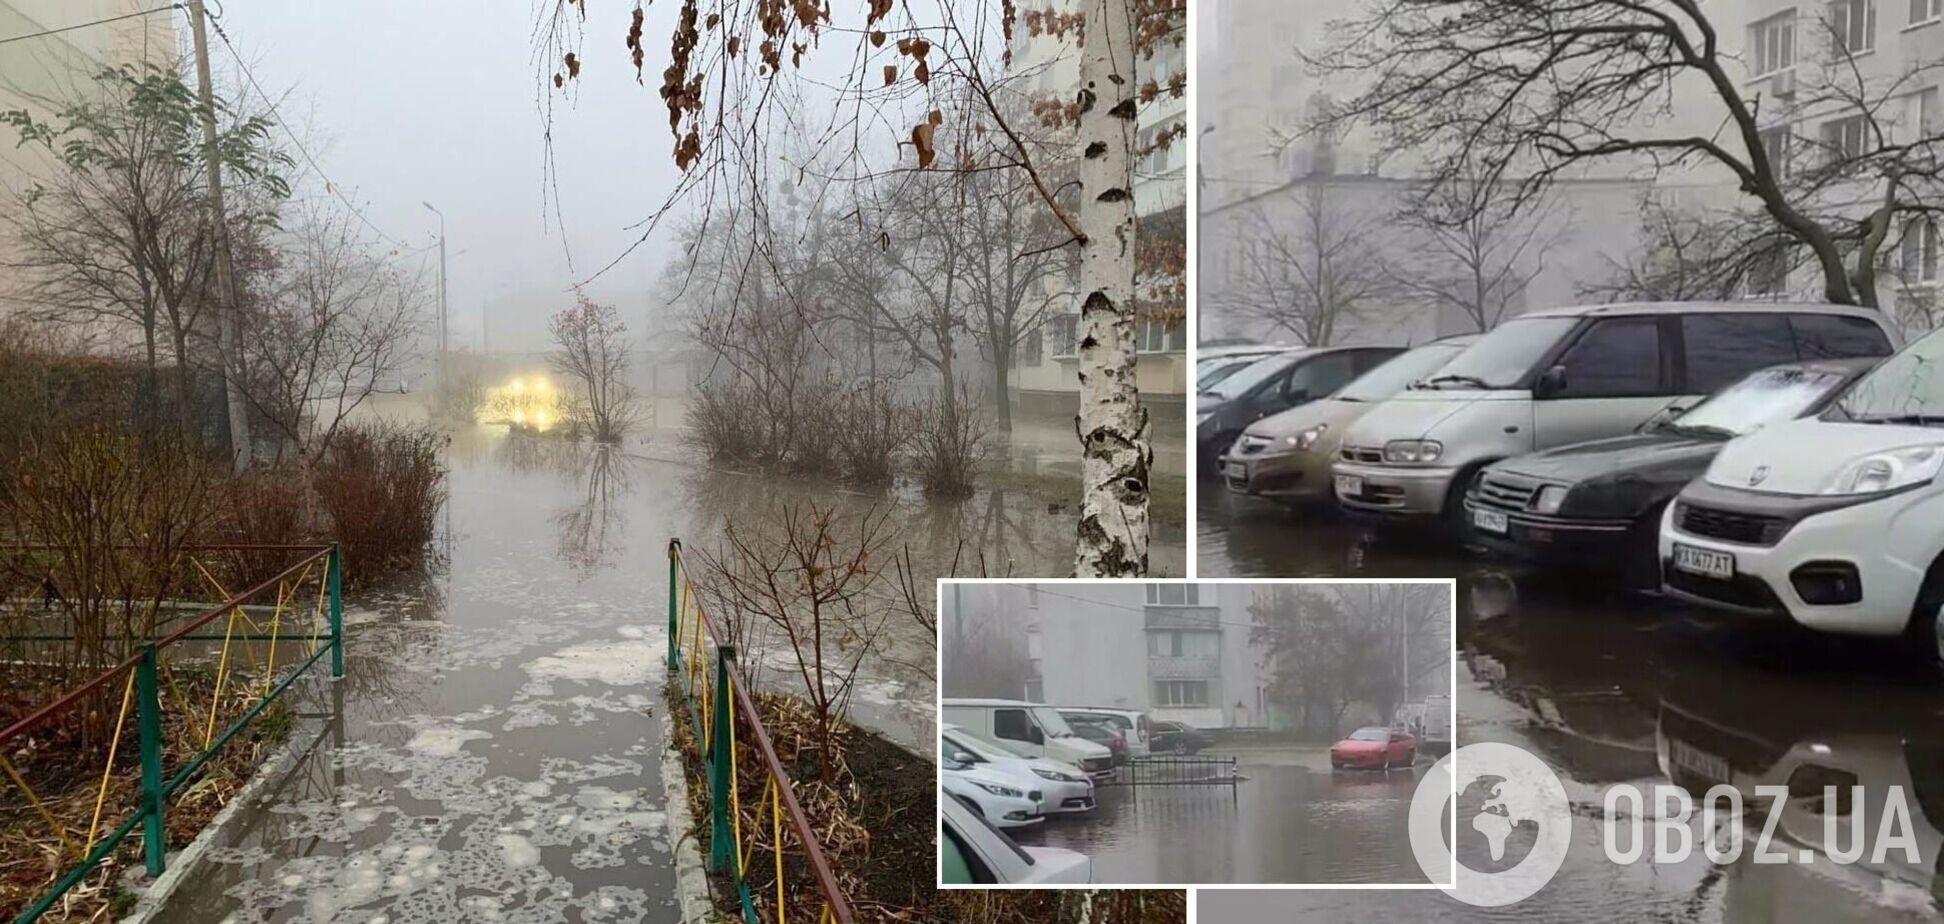 В Киеве из-за прорыва трубы затопило несколько улиц, проезд был затруднен. Фото и видео